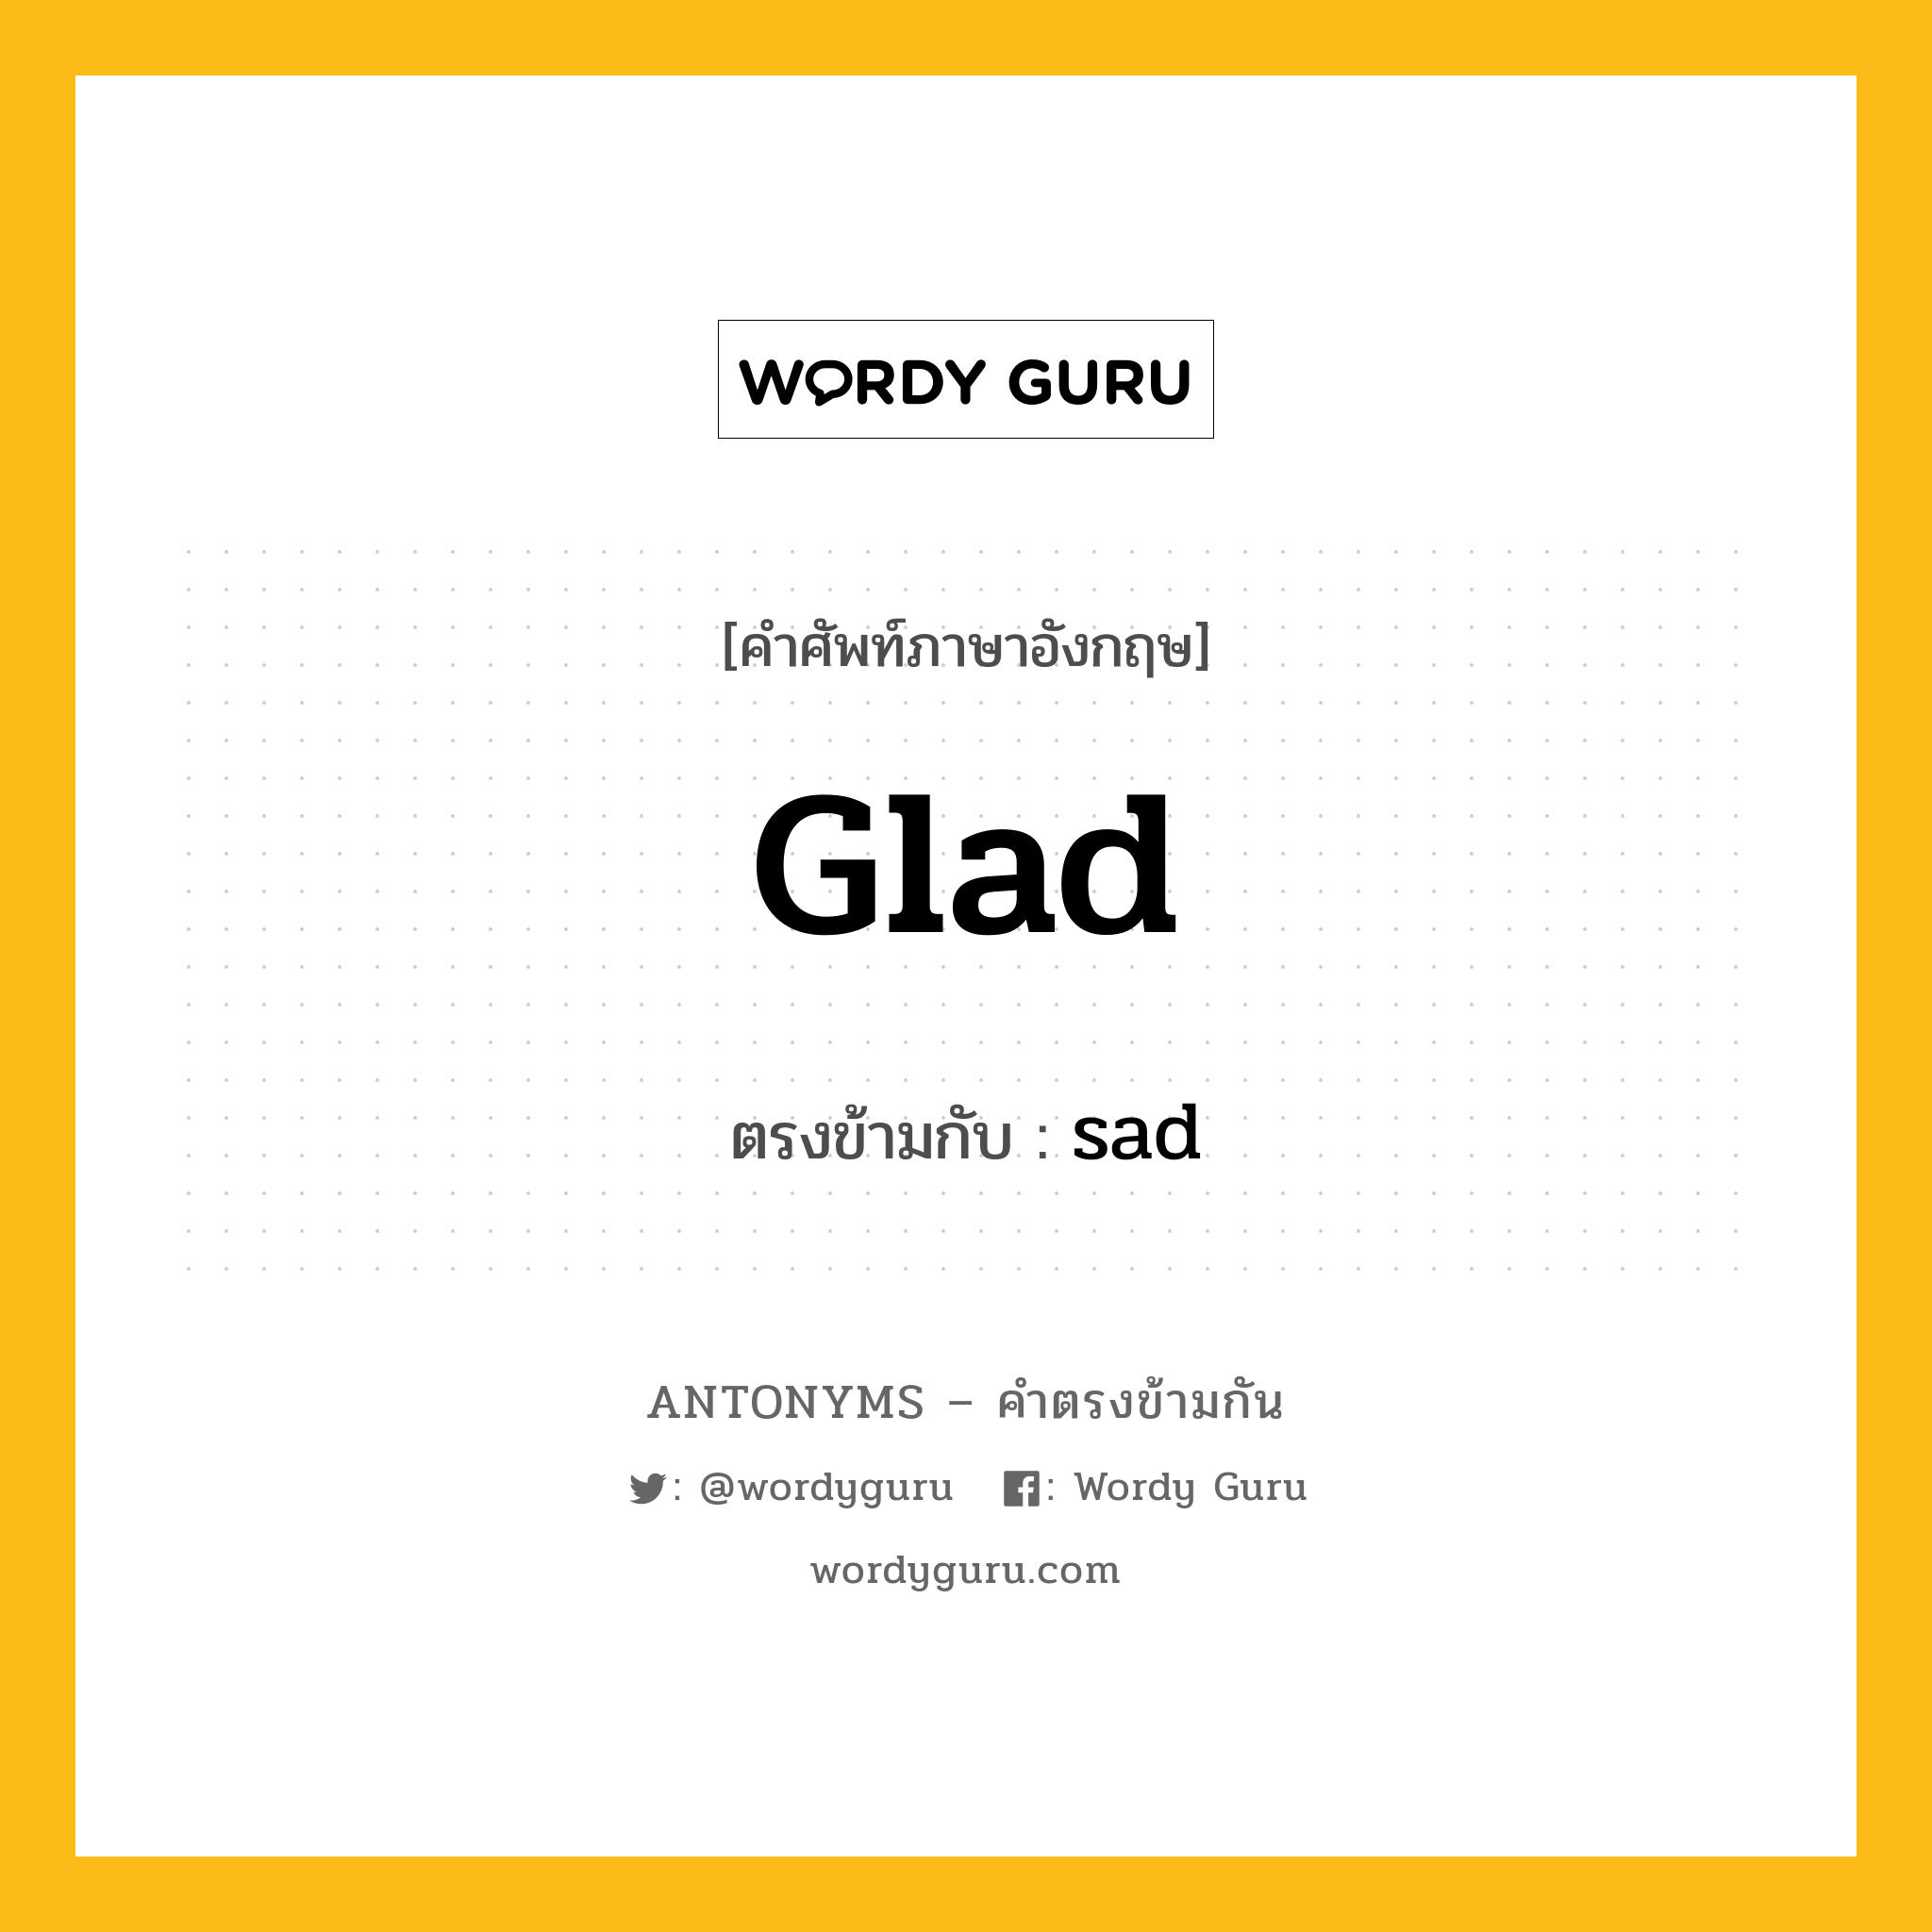 glad เป็นคำตรงข้ามกับคำไหนบ้าง?, คำศัพท์ภาษาอังกฤษ glad ตรงข้ามกับ sad หมวด sad